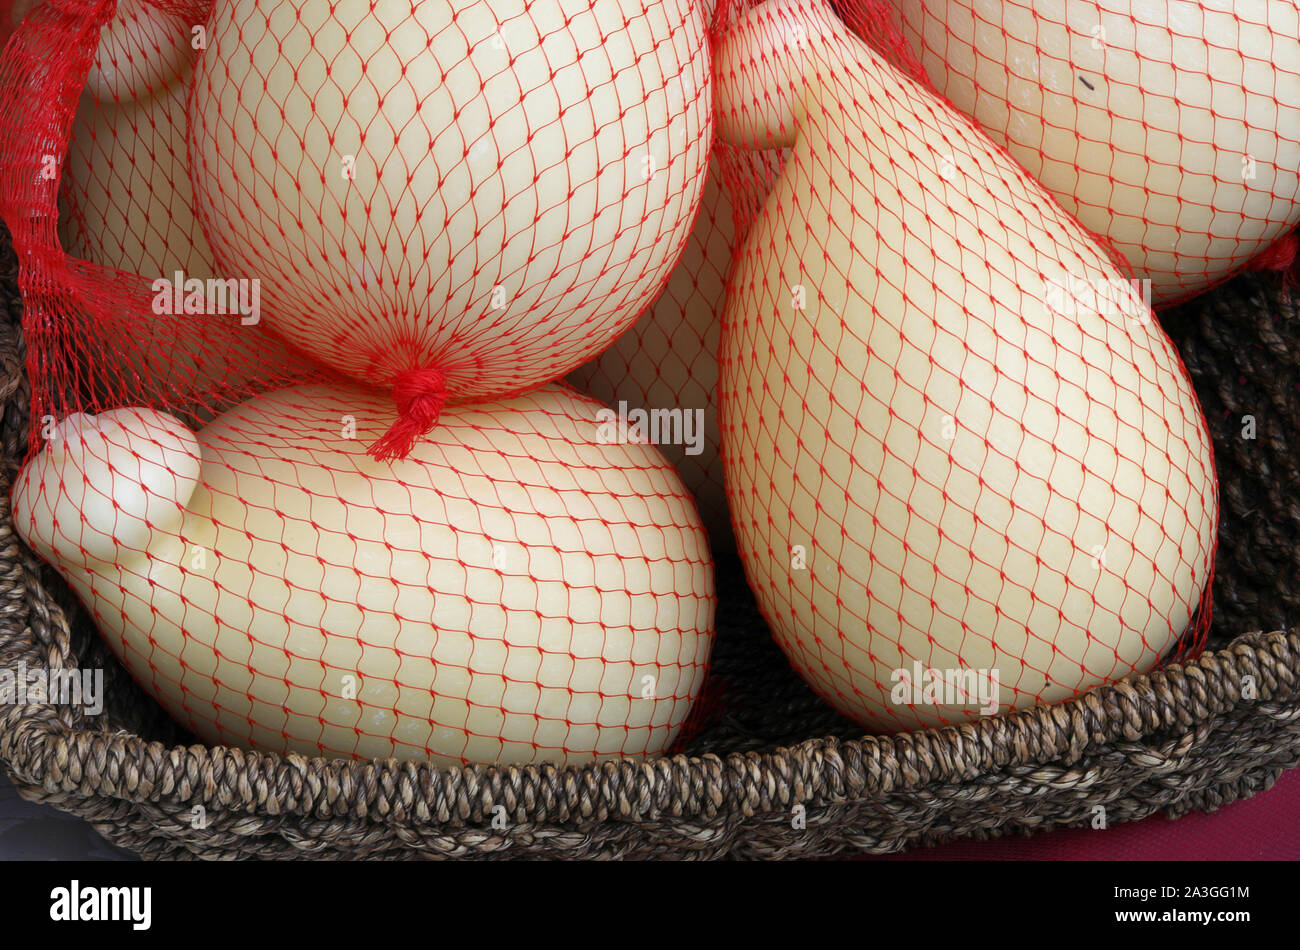 Formaggio italiano chiamato scamorza sul rosso netti per la vendita in Italia Foto Stock